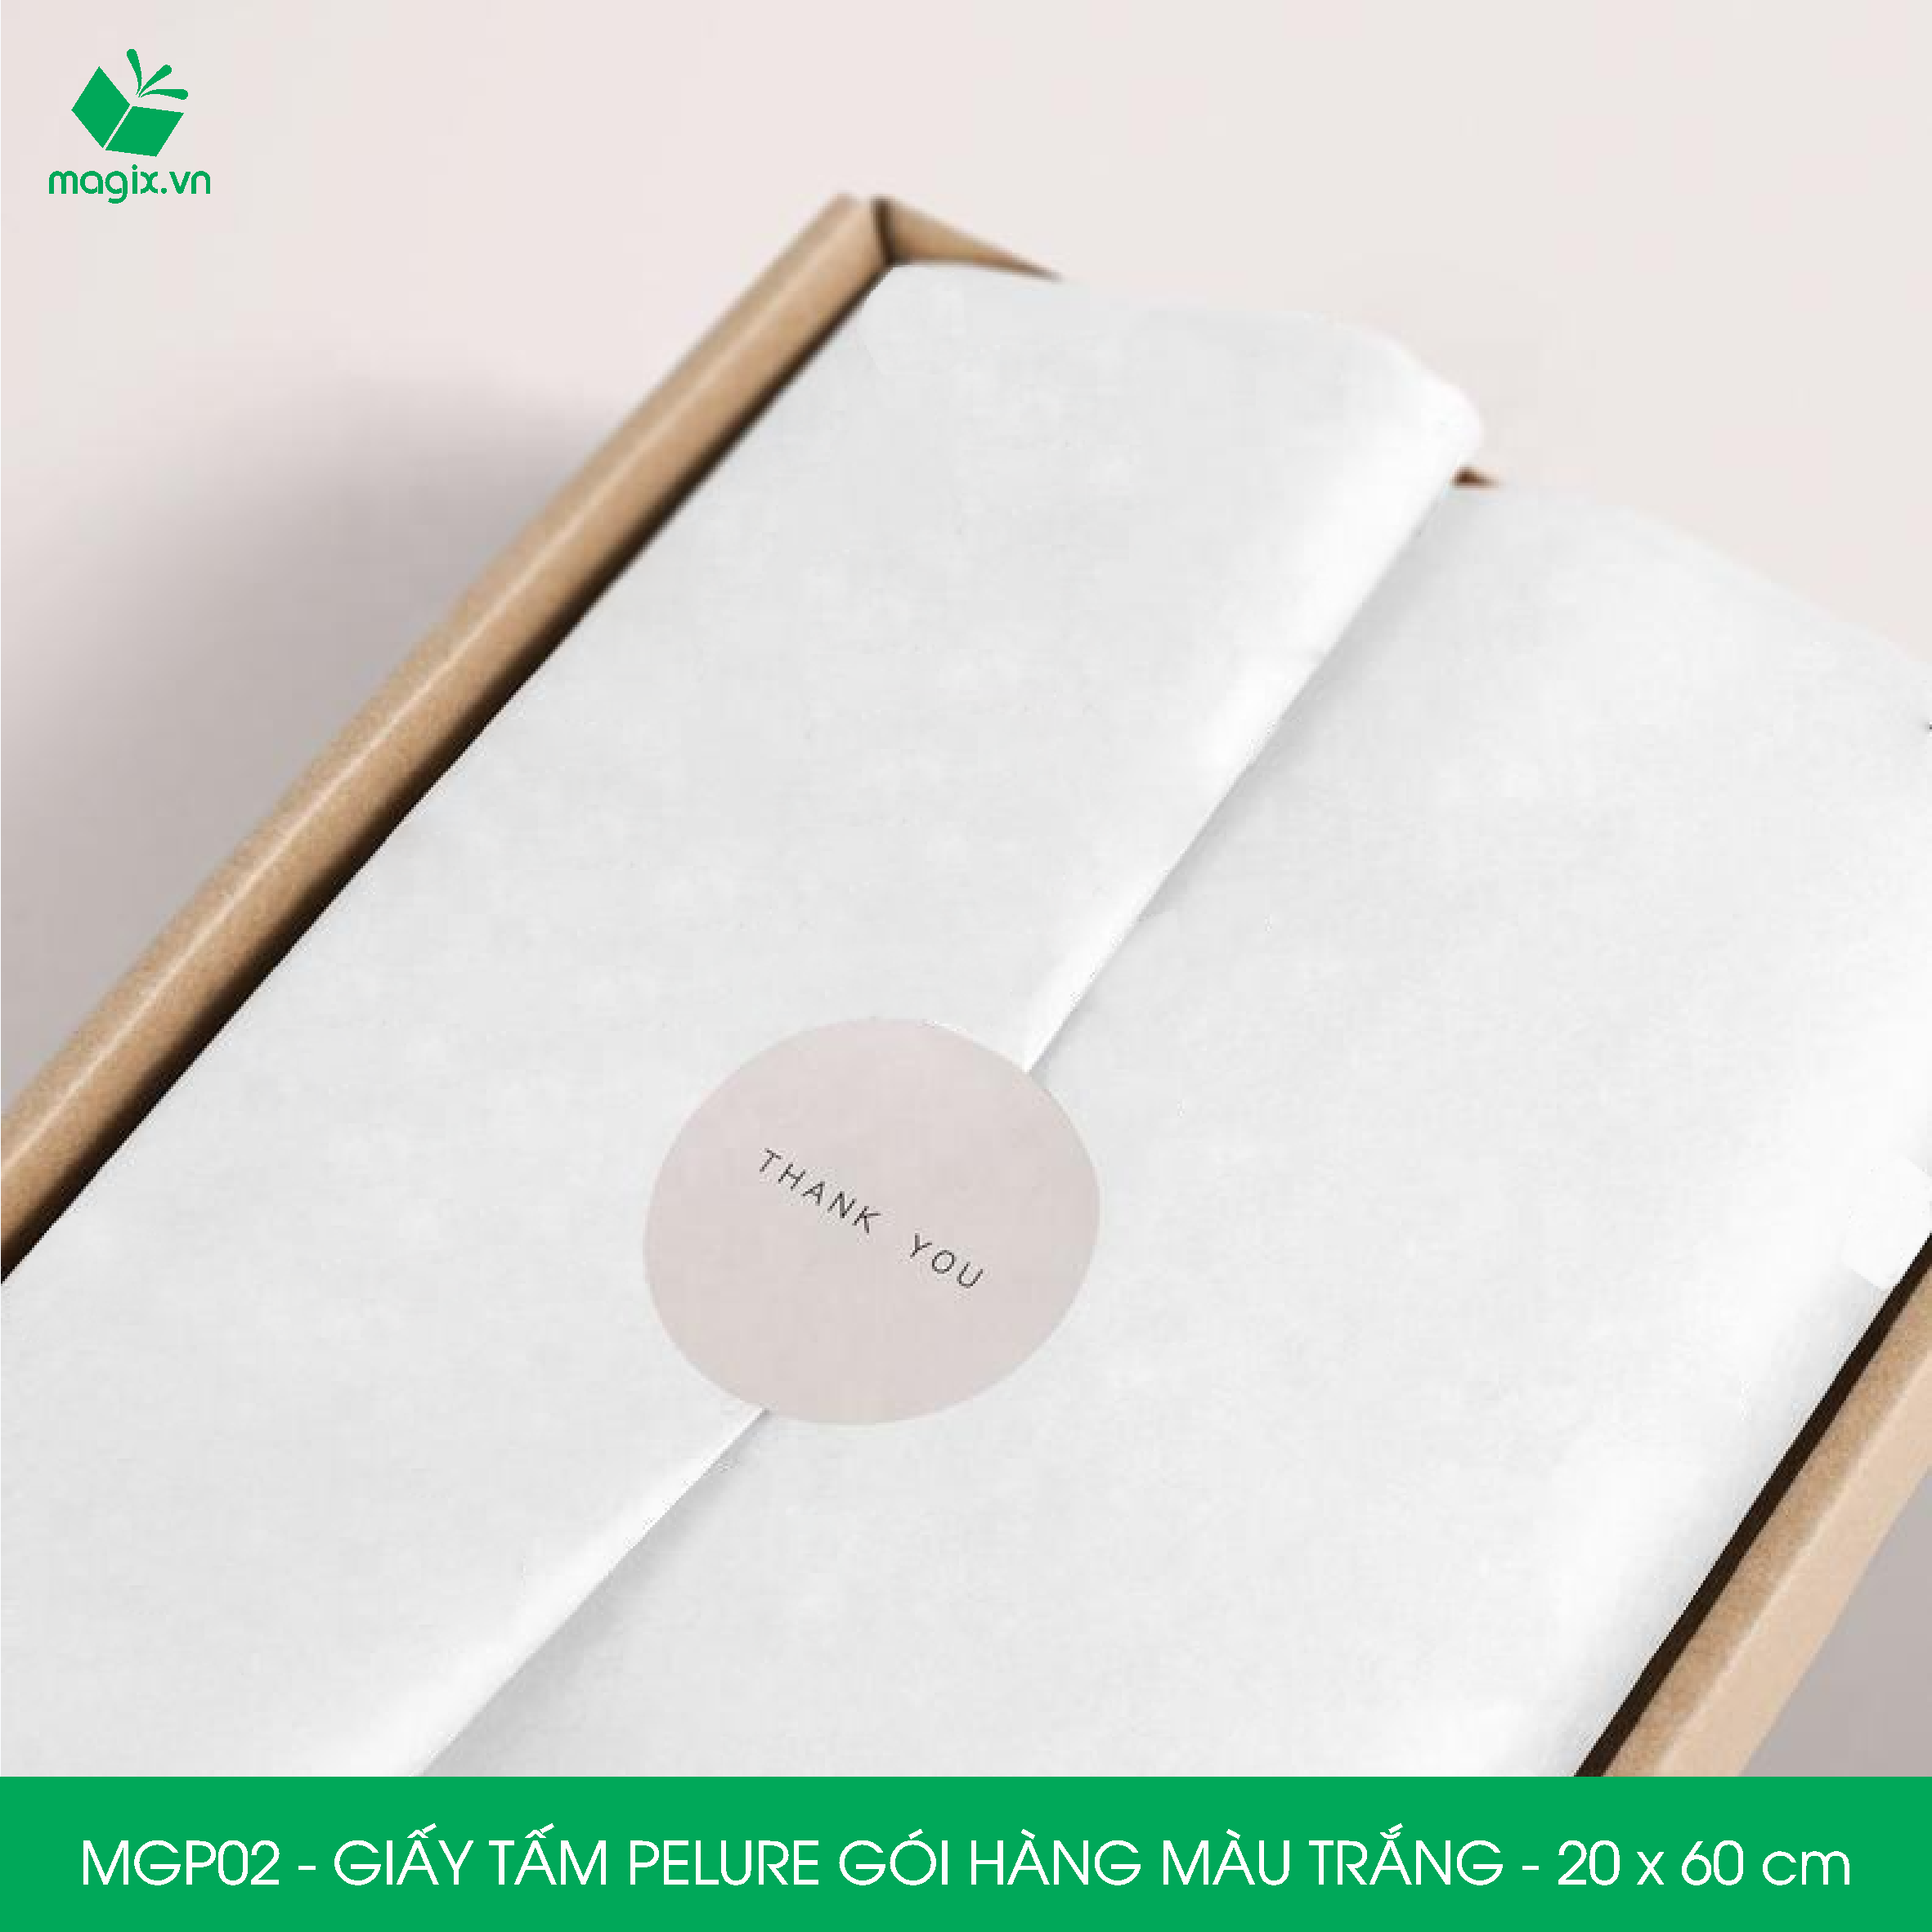 MGP02 - 20x60 cm - 500 tấm giấy Pelure trắng gói hàng, giấy chống ẩm 2 mặt mịn, giấy bọc hàng thời trang